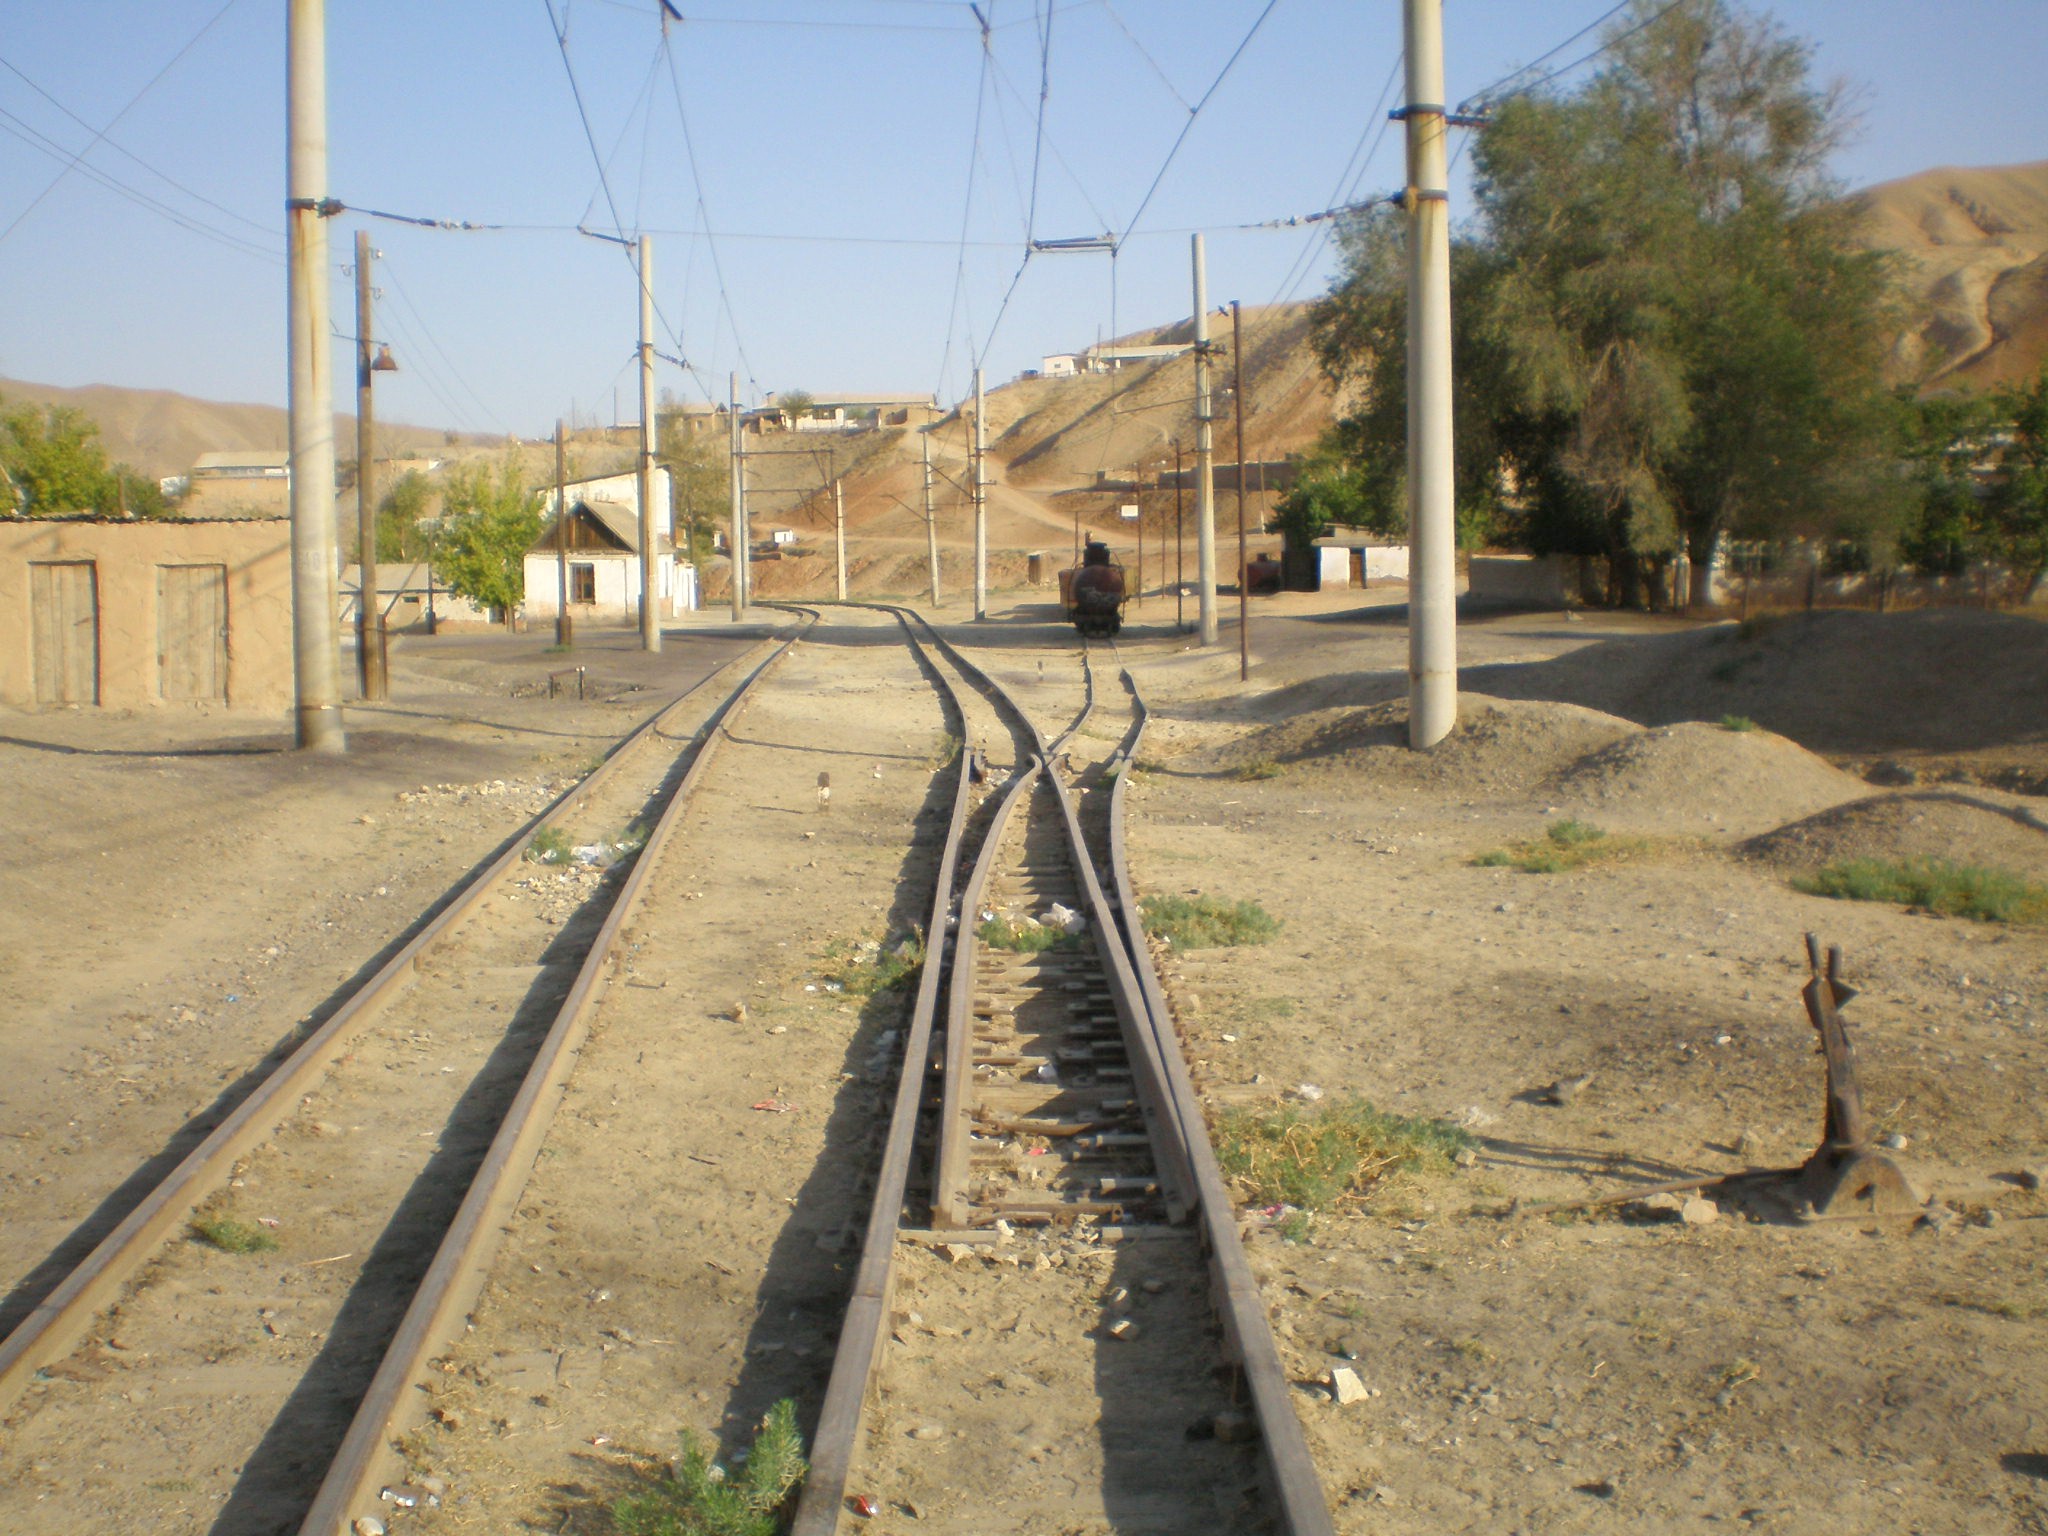 Сулюктинская узкоколейная железная дорога  —  фотографии, сделанные в 2008 году (часть 38)